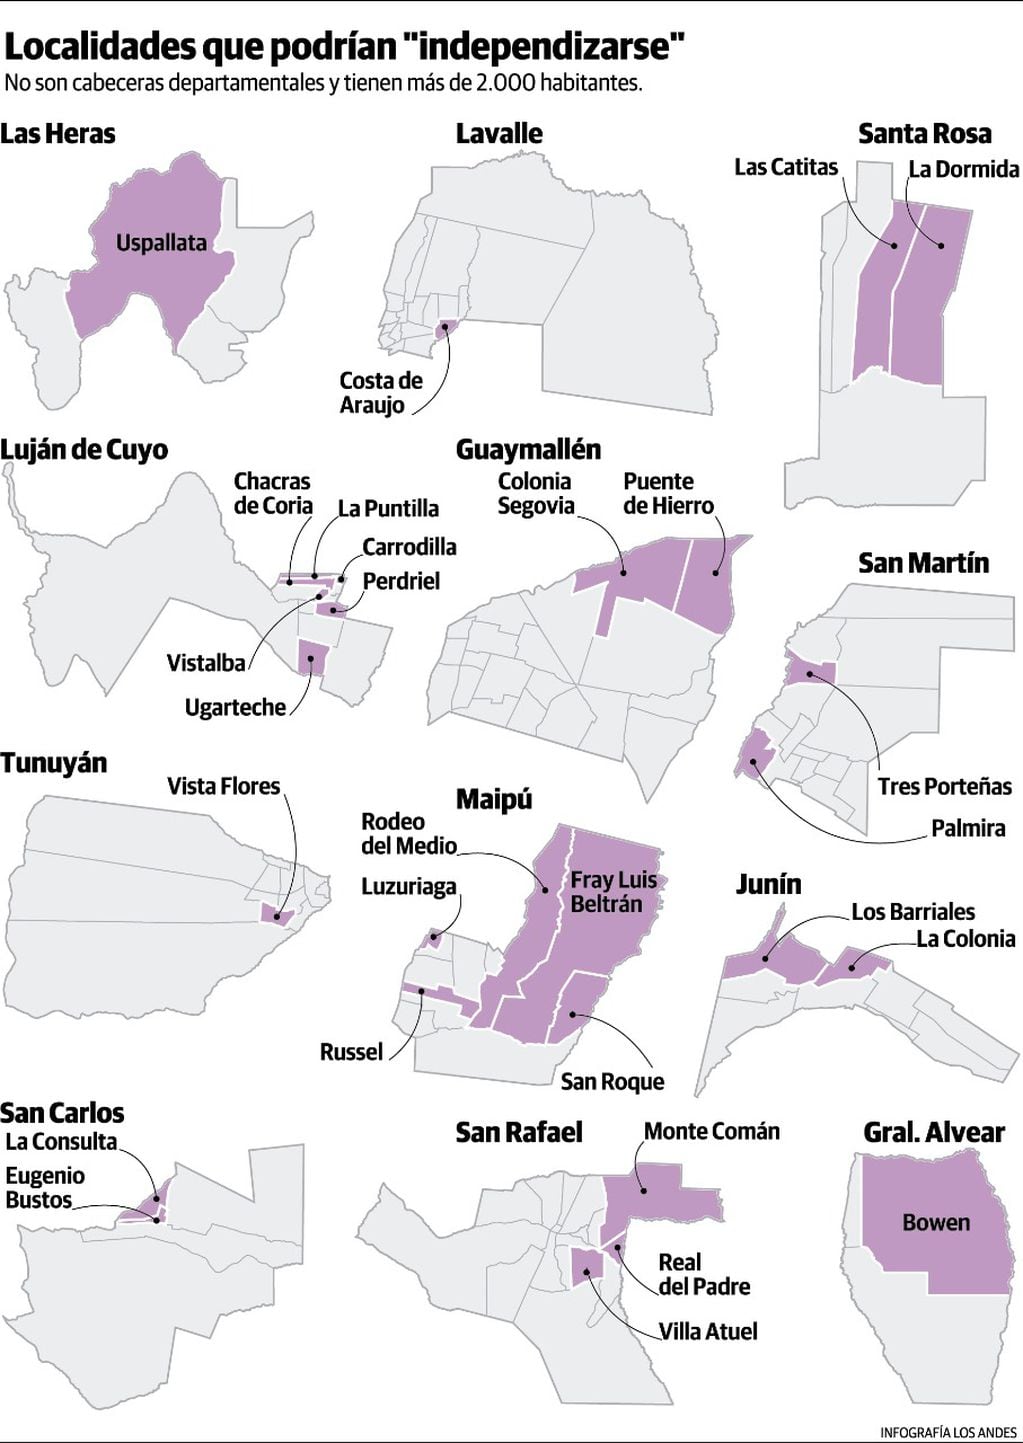 Localidades que podrían independizarse. Gustavo Guevara.